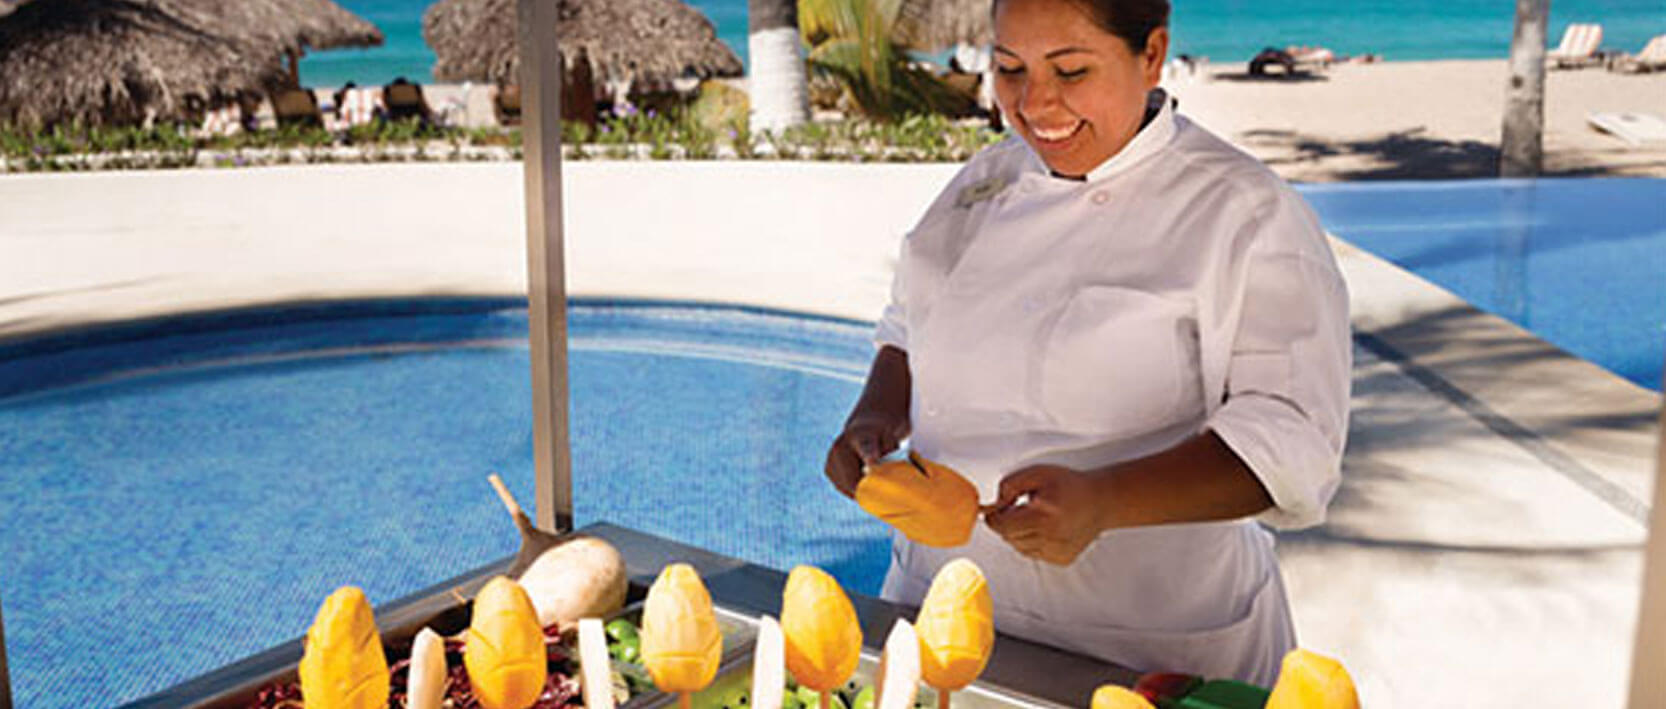 Hyatt Ziva Puerto Vallarta Restaurants and Bars - Food Carts